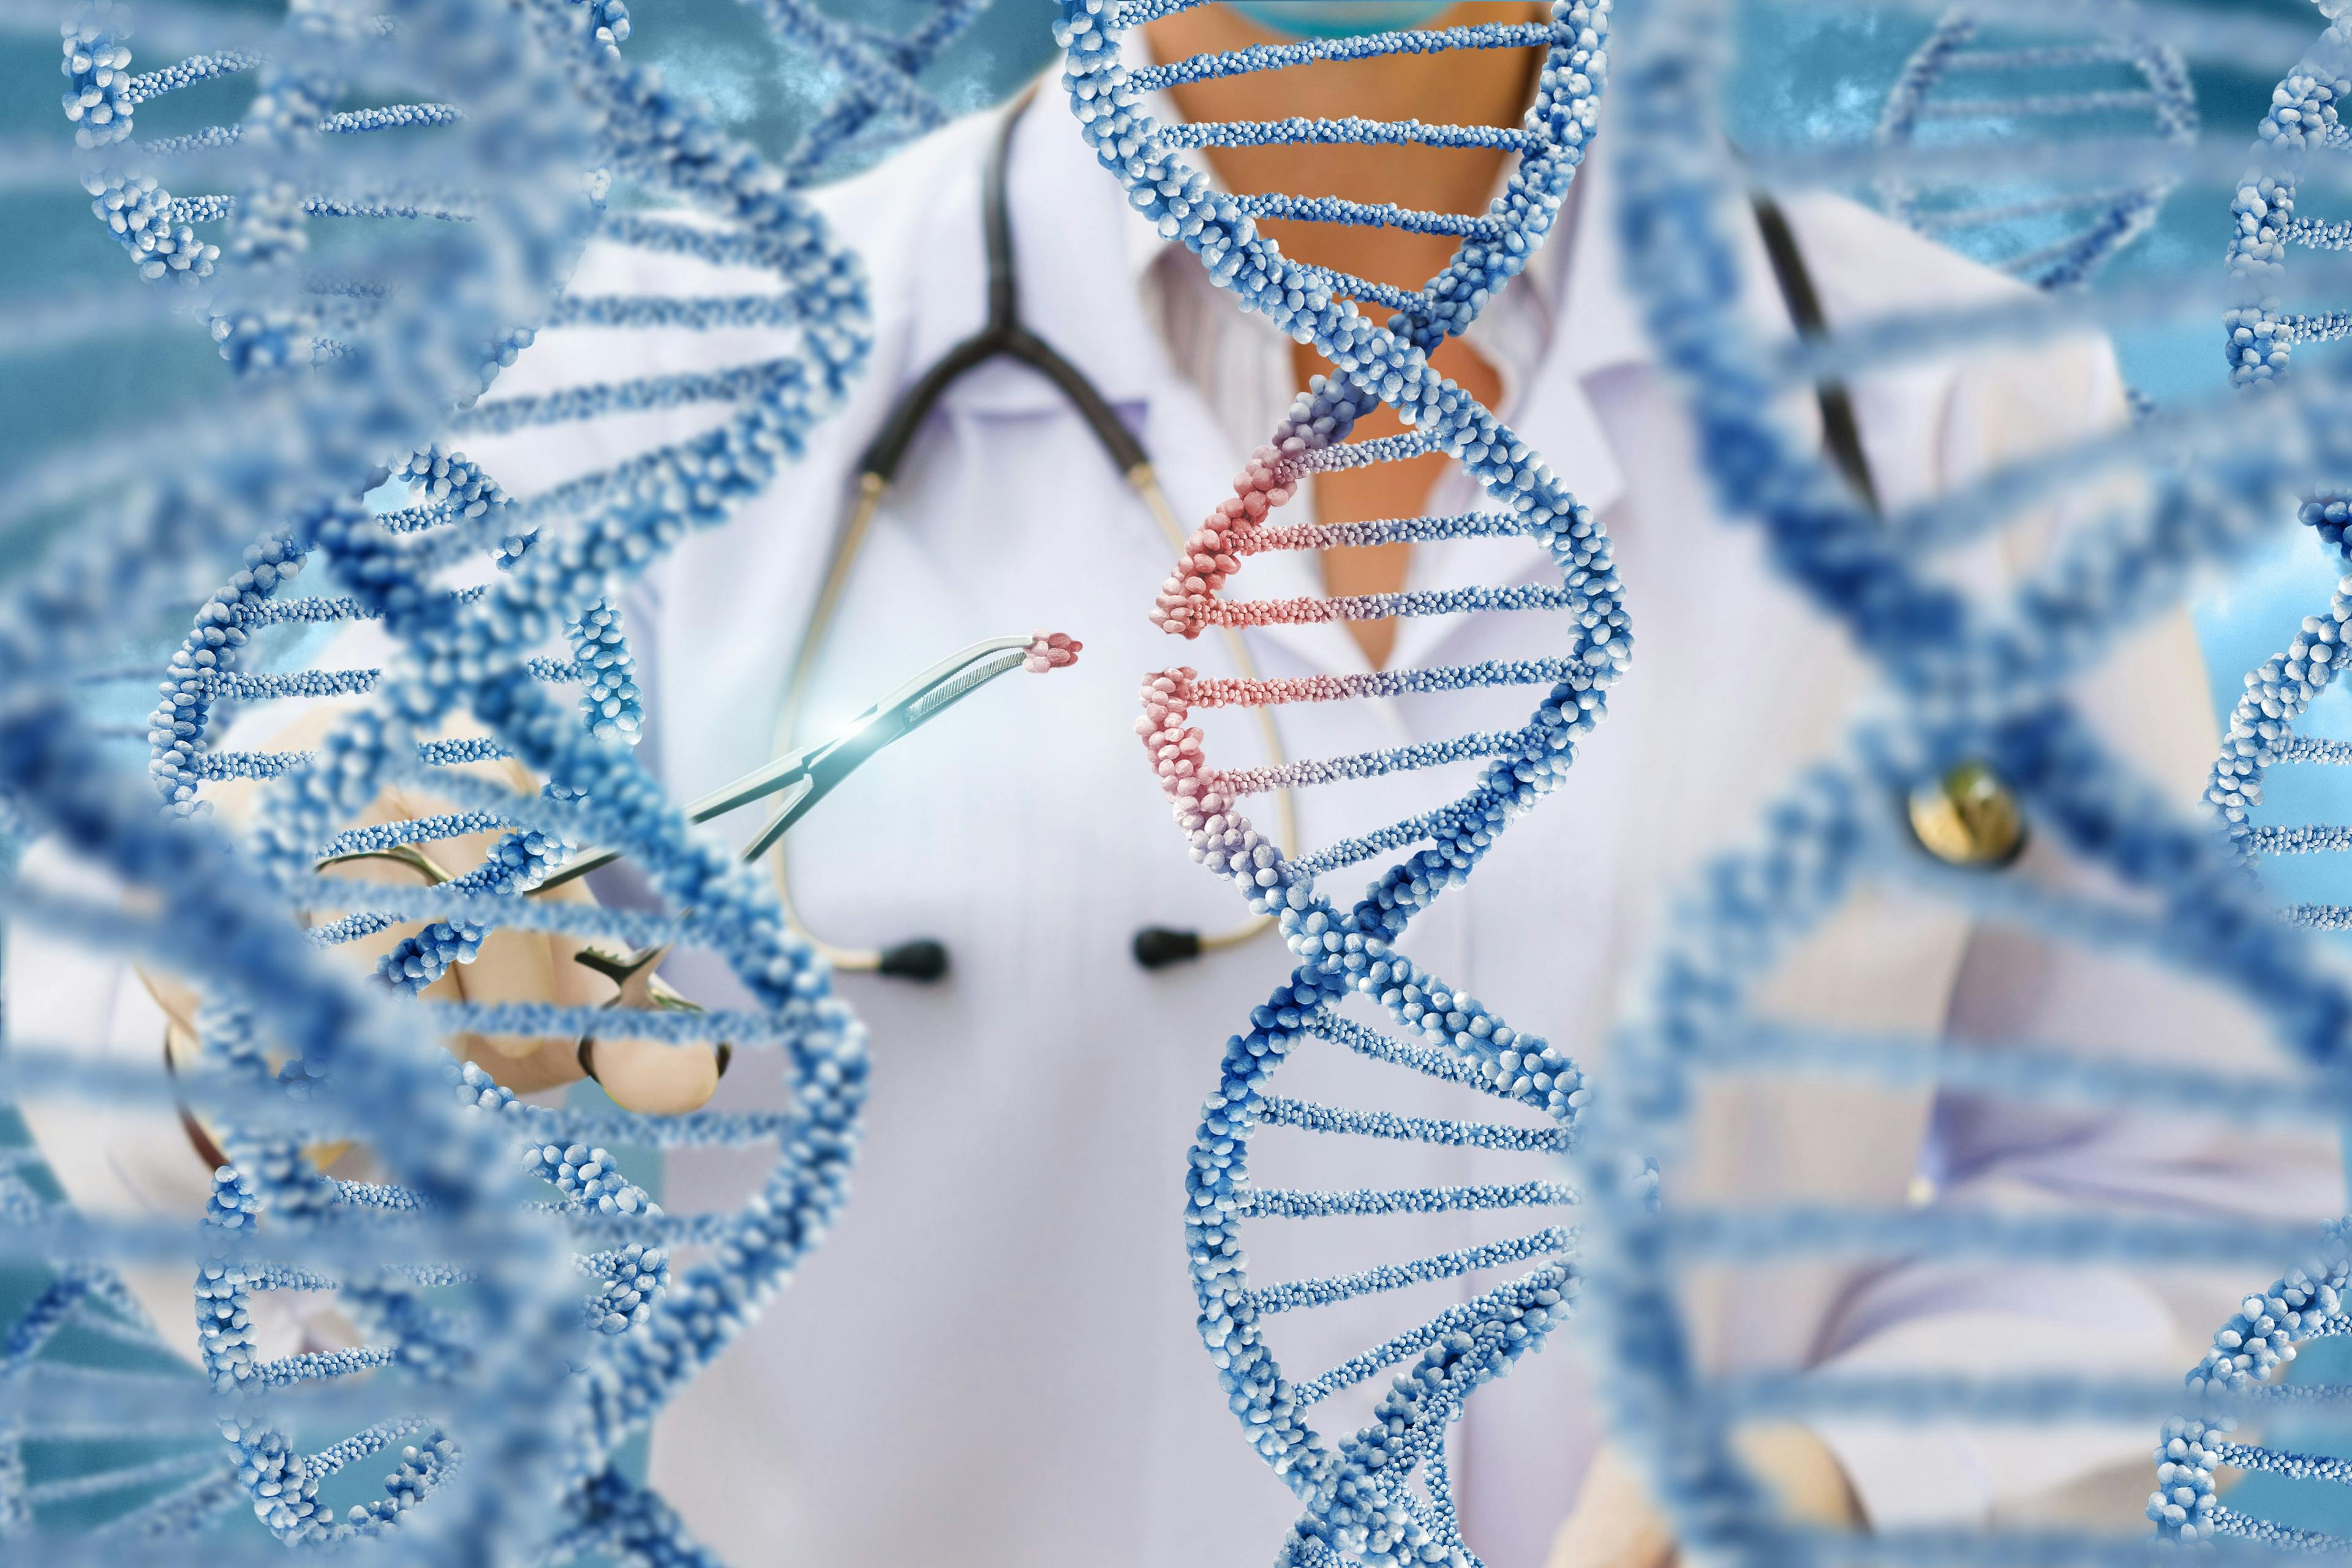 Rare Disease Consortium to Focus on Optimizing AAV Gene Therapies 